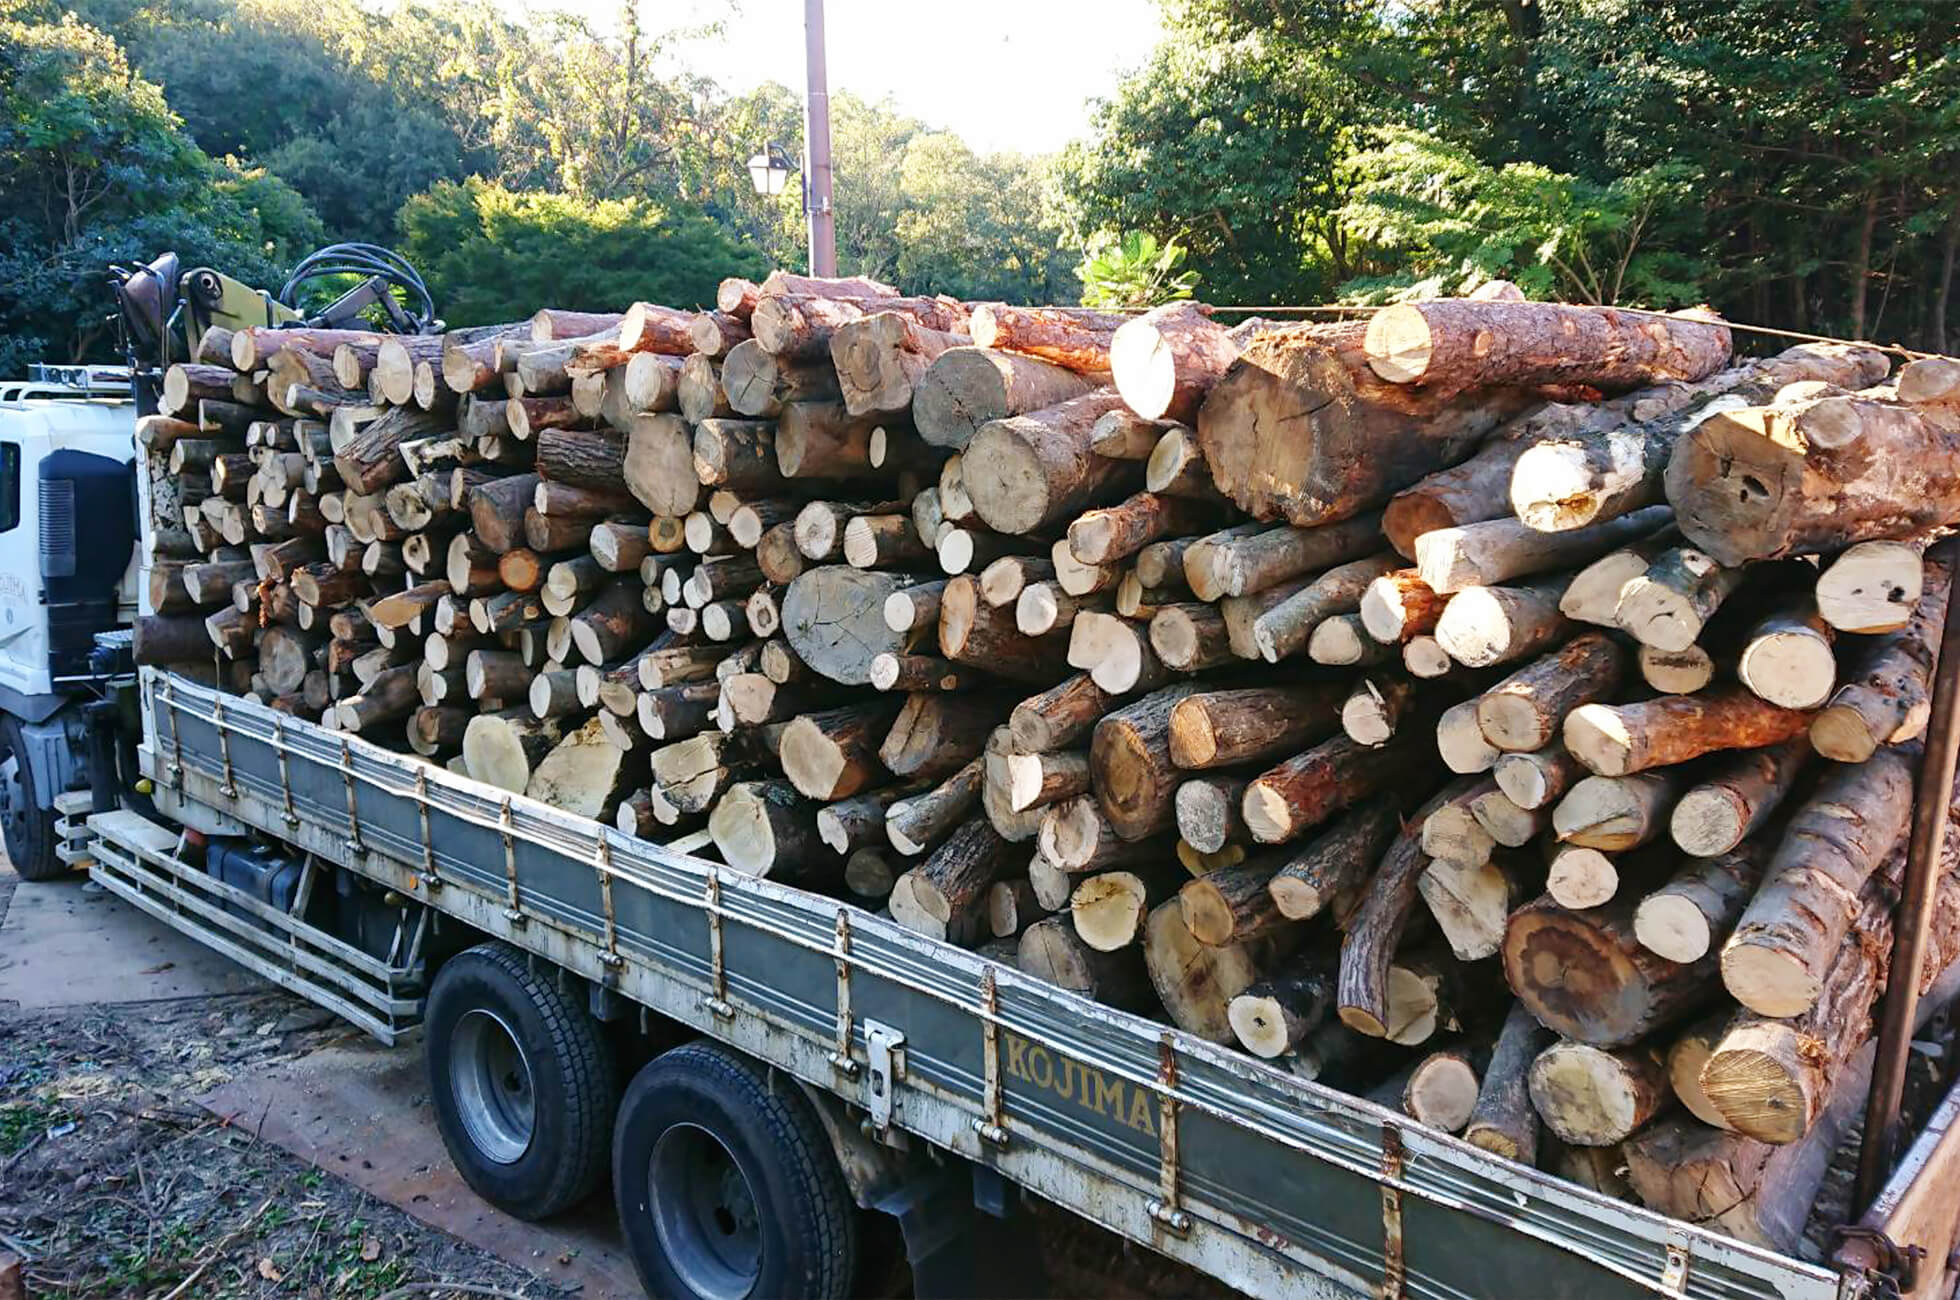 樹木伐採工事途中の様子